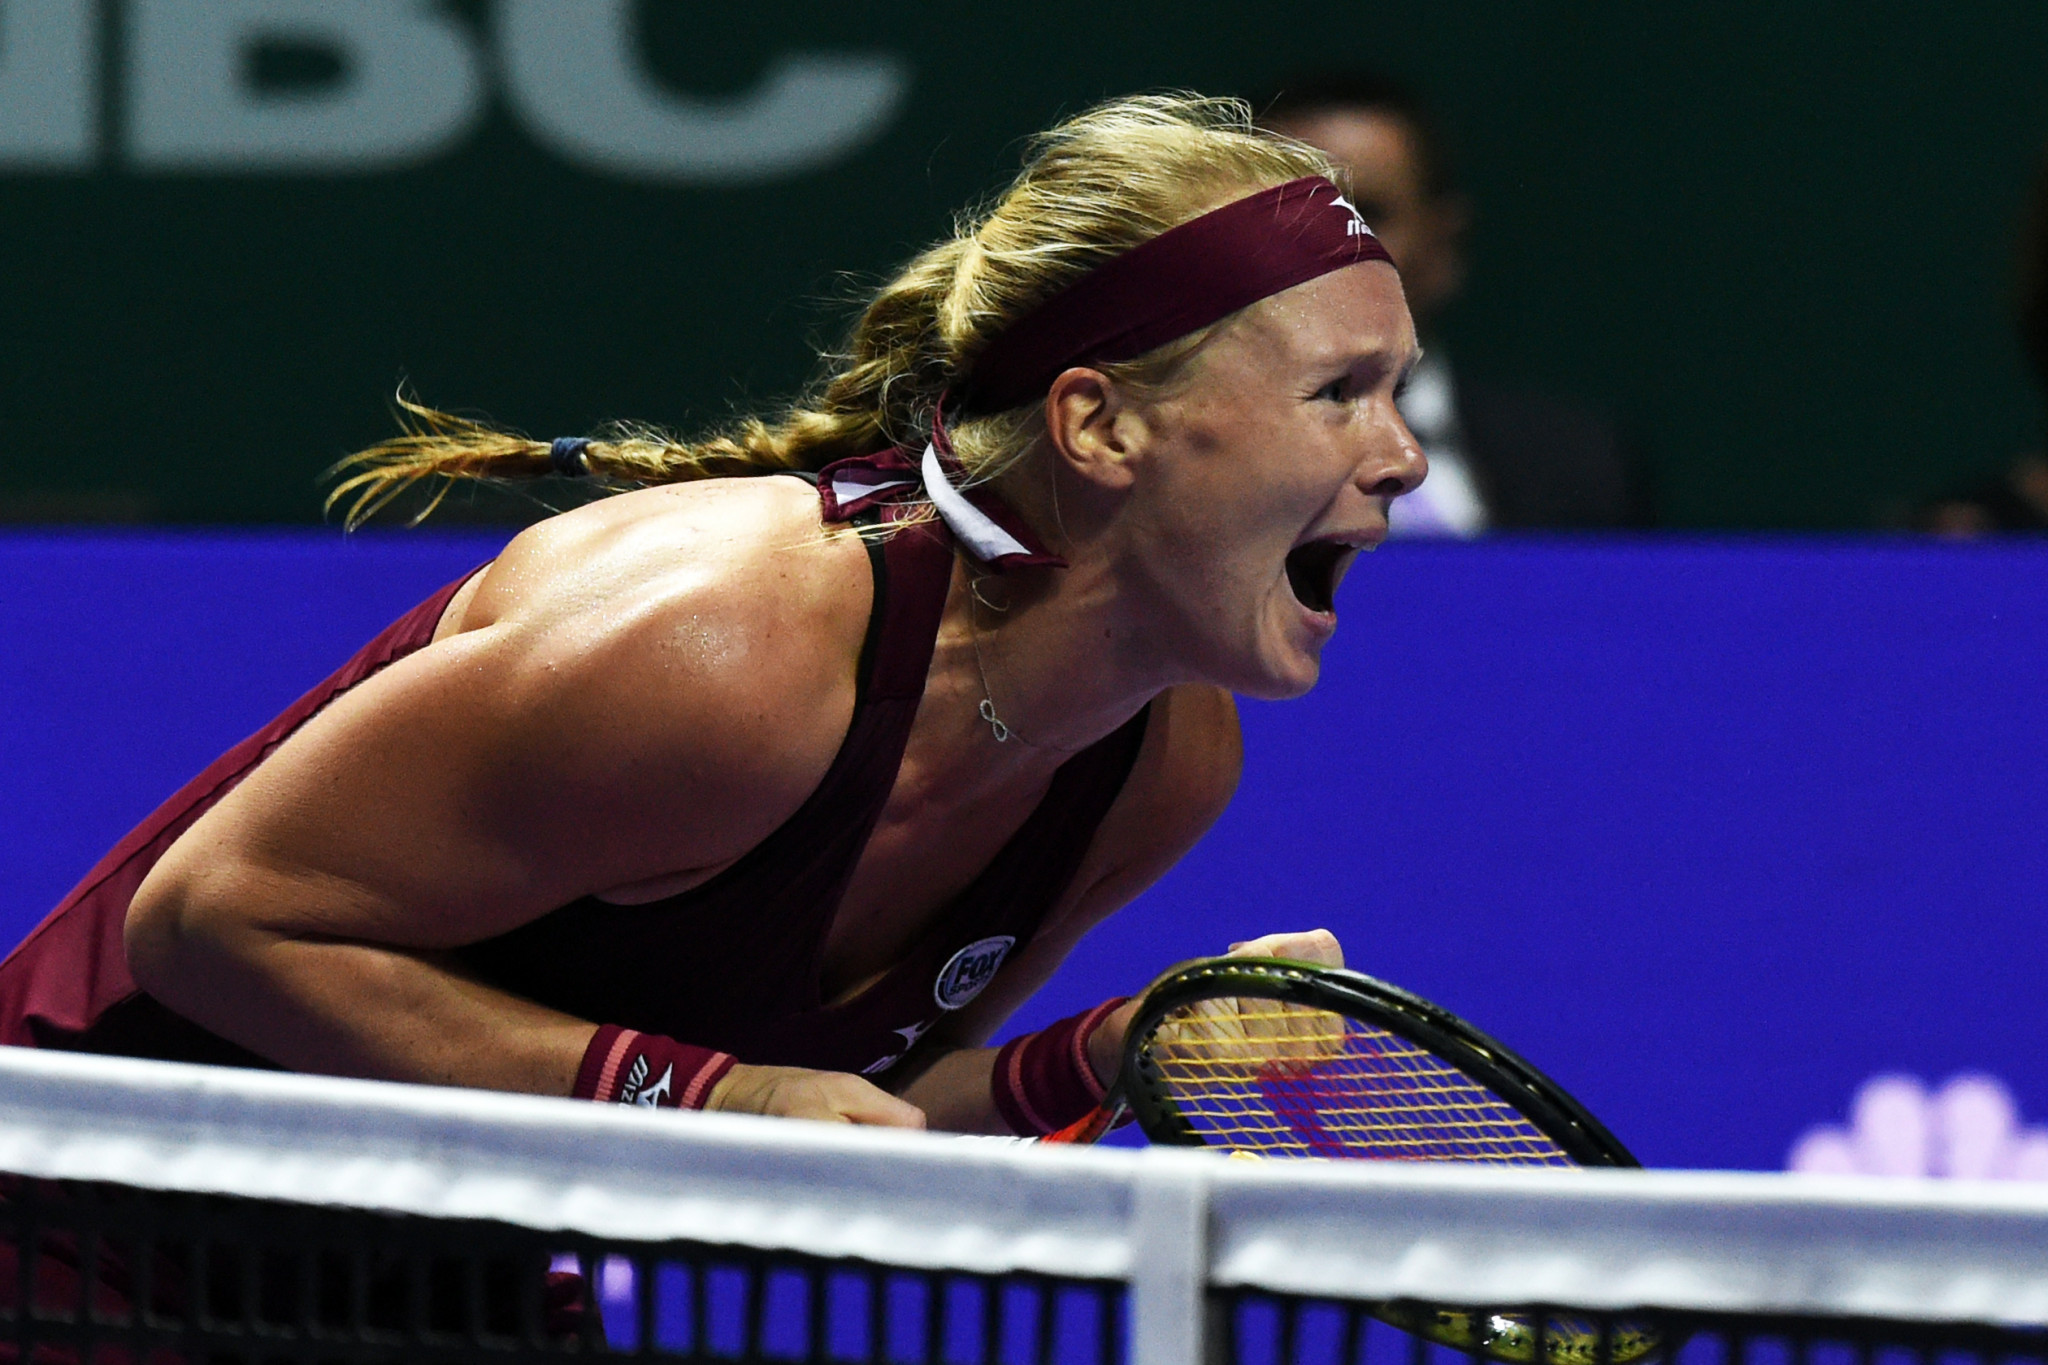 Bertens stuns Kerber in debut WTA Finals match after late call-up